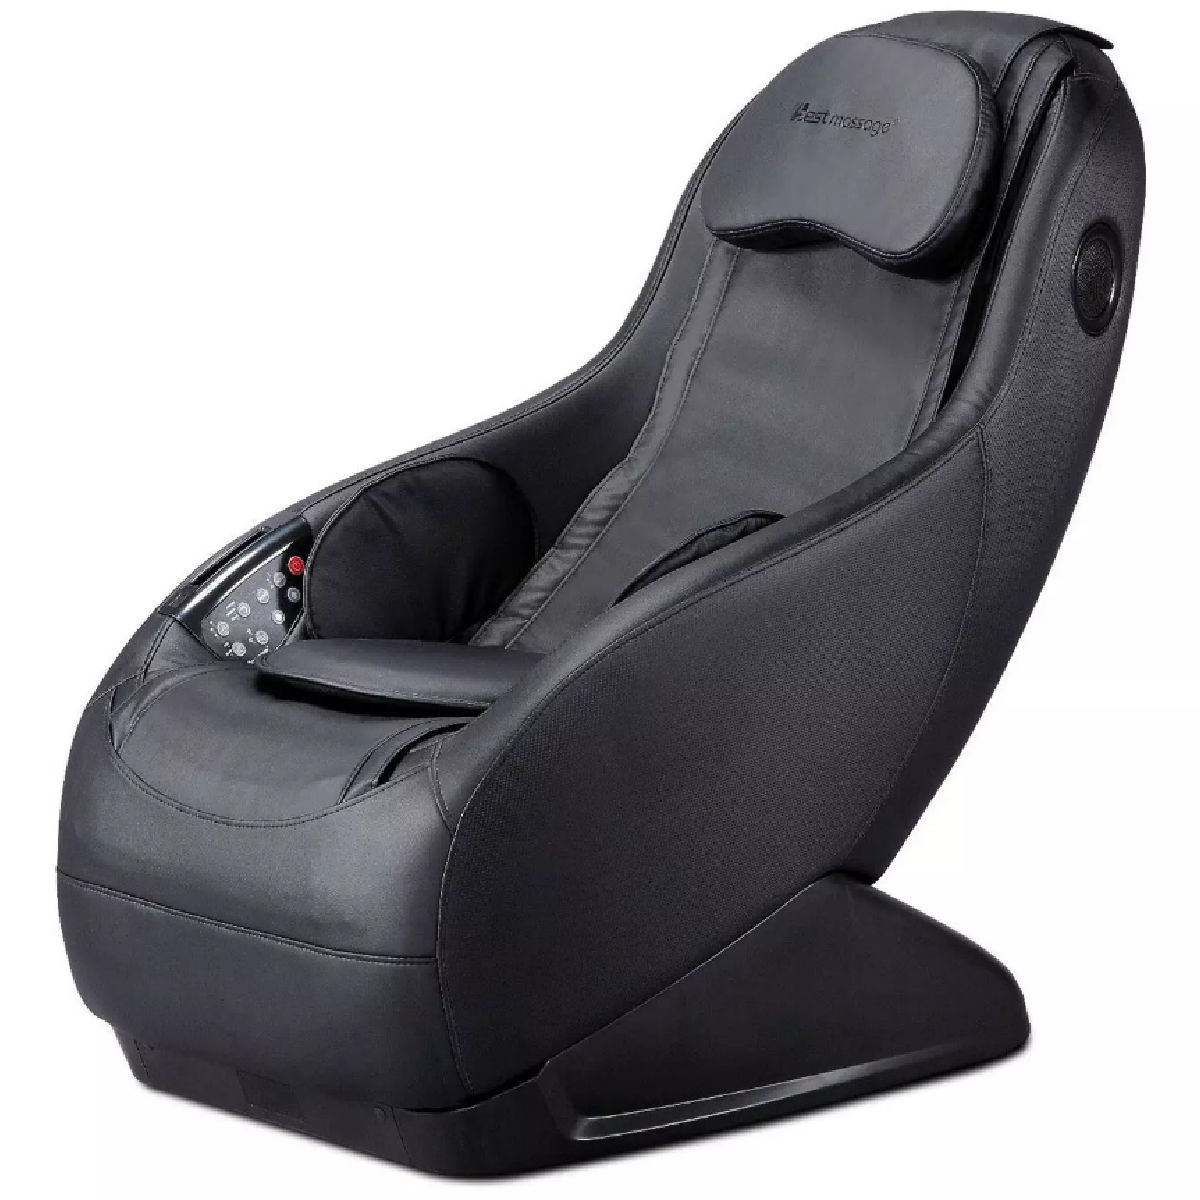 Best Massage BM-EC358BL Gaming Massage Chair